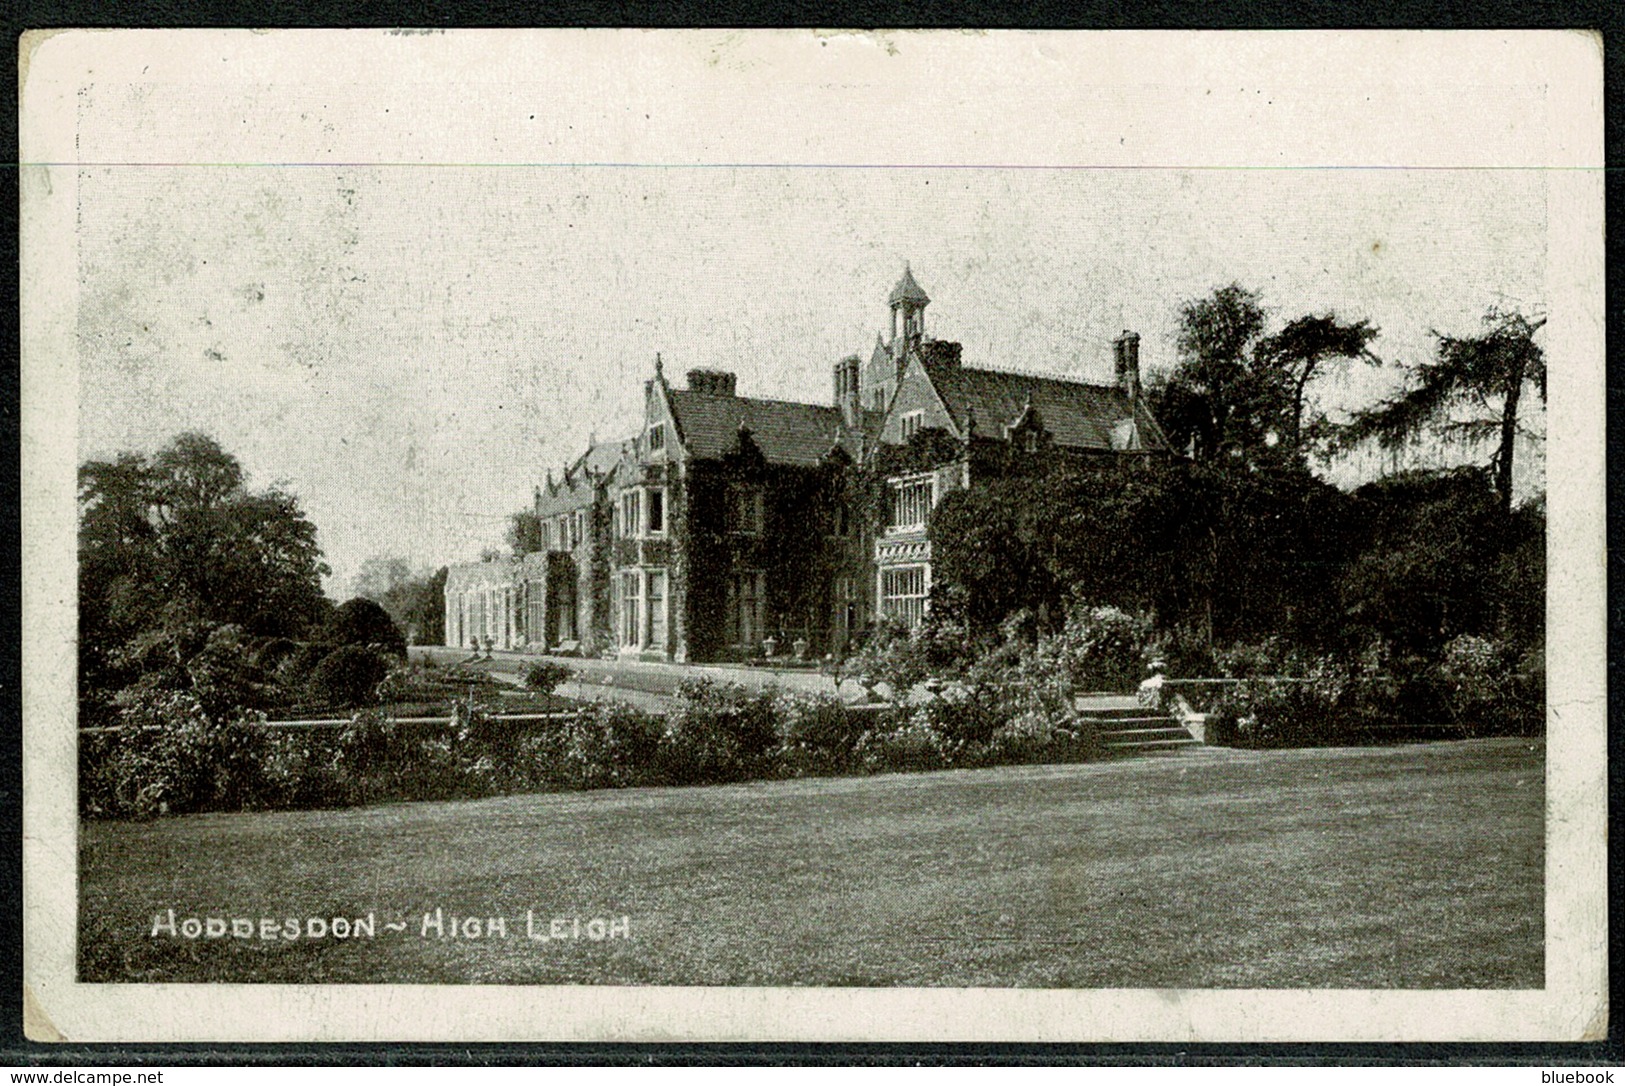 Ref 1298 - 1910 Postcard - High Leigh - Hoddesdon Hertfordshire - Hertfordshire